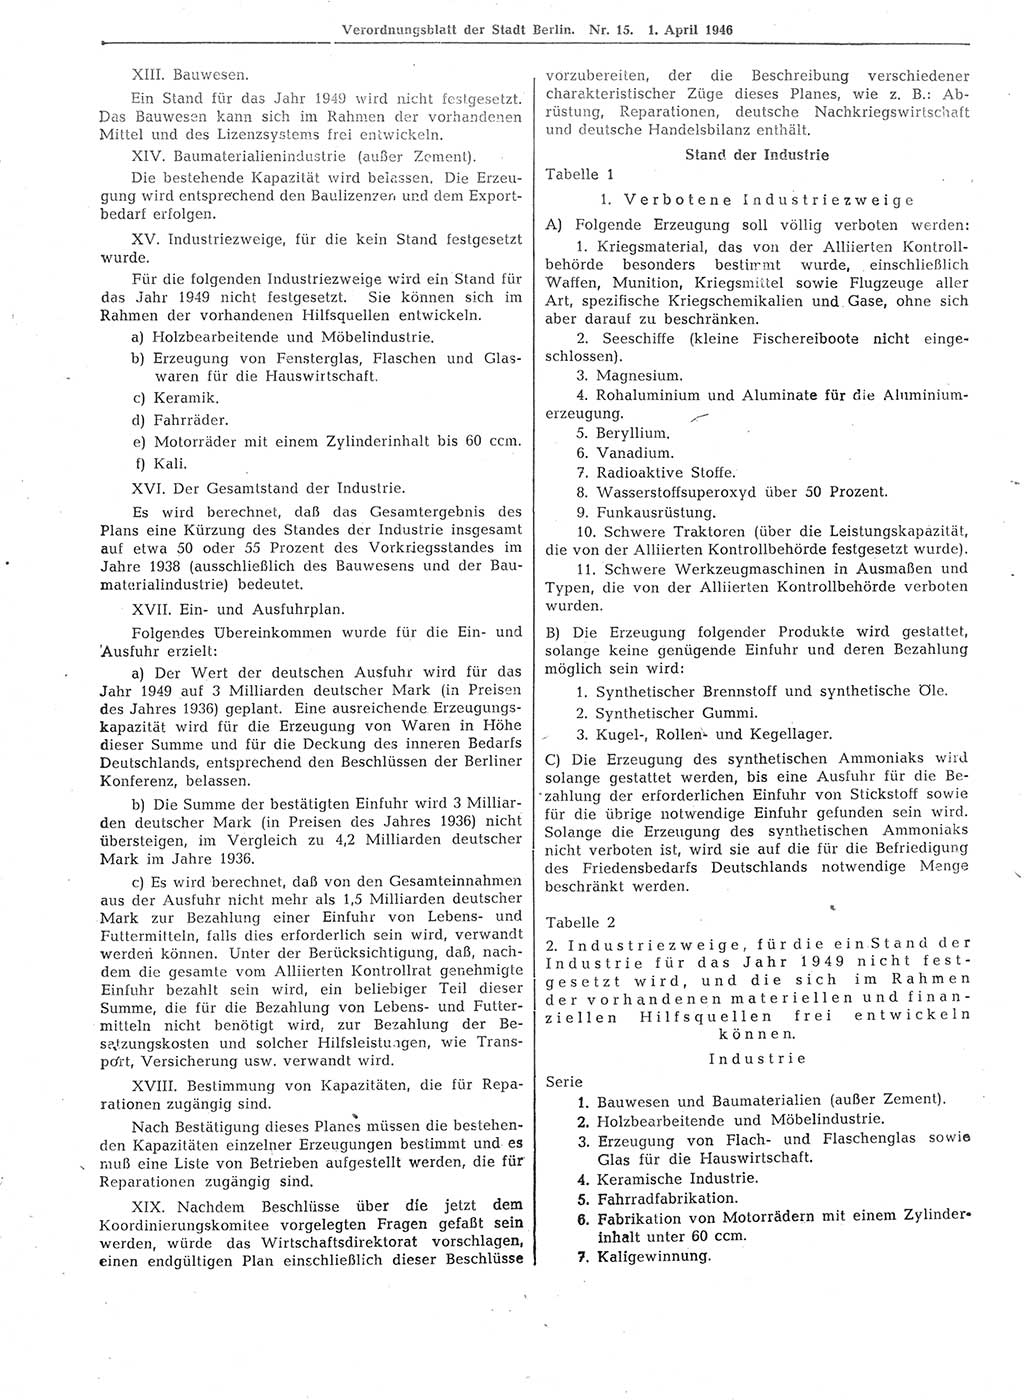 Verordnungsblatt (VOBl.) der Stadt Berlin, für Groß-Berlin 1946, Seite 114 (VOBl. Bln. 1946, S. 114)